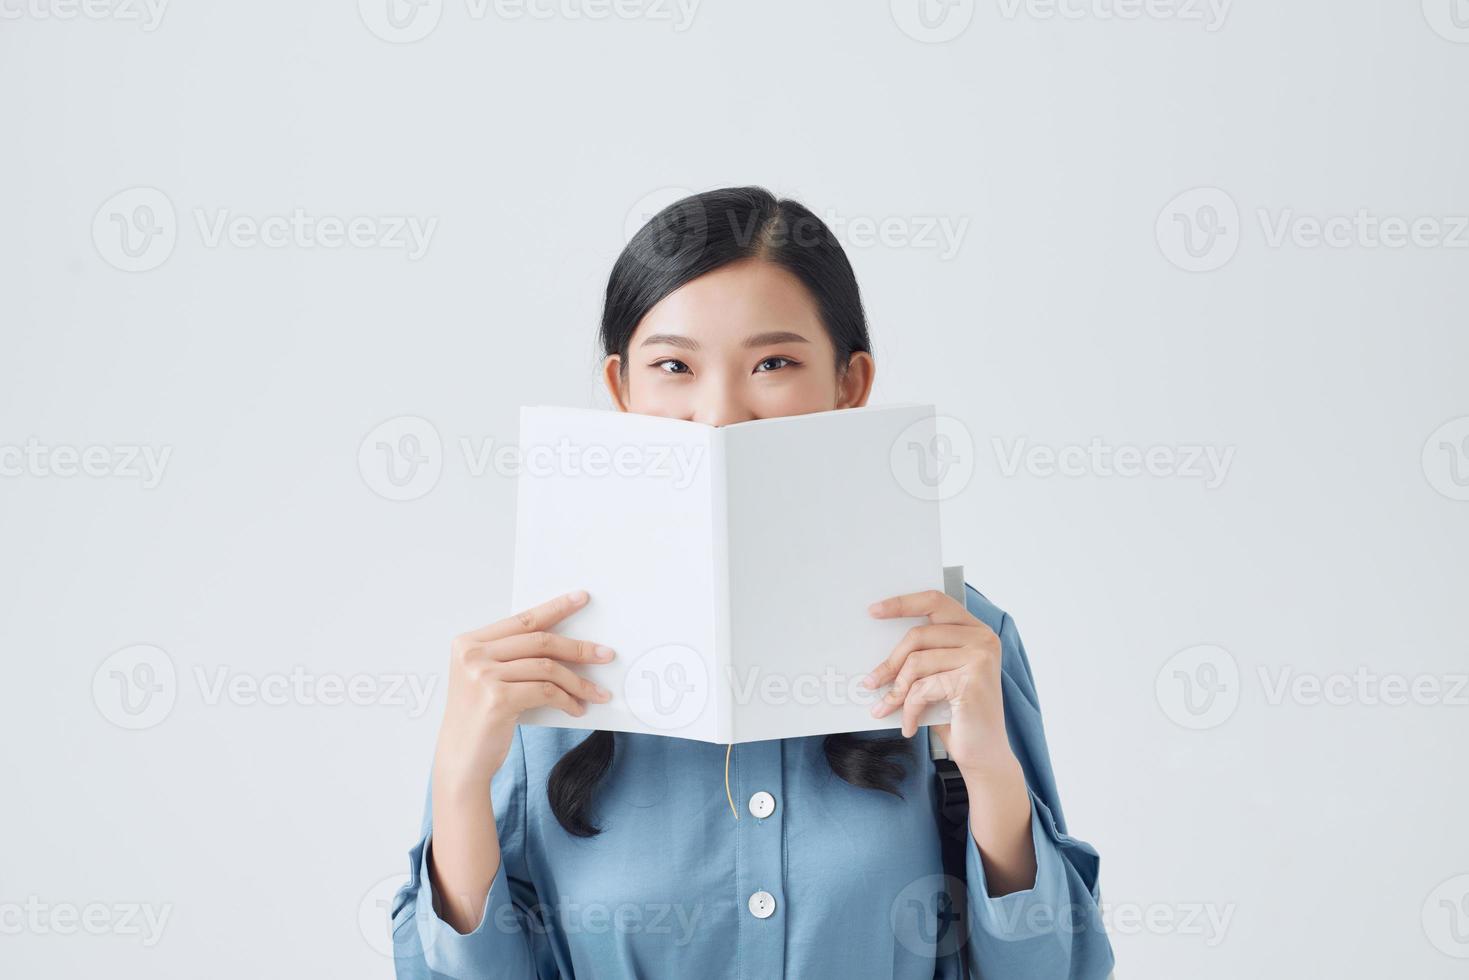 menina pensativa feliz segurando o caderno branco, cobrindo metade do rosto, olhando atentamente para a câmera, foto